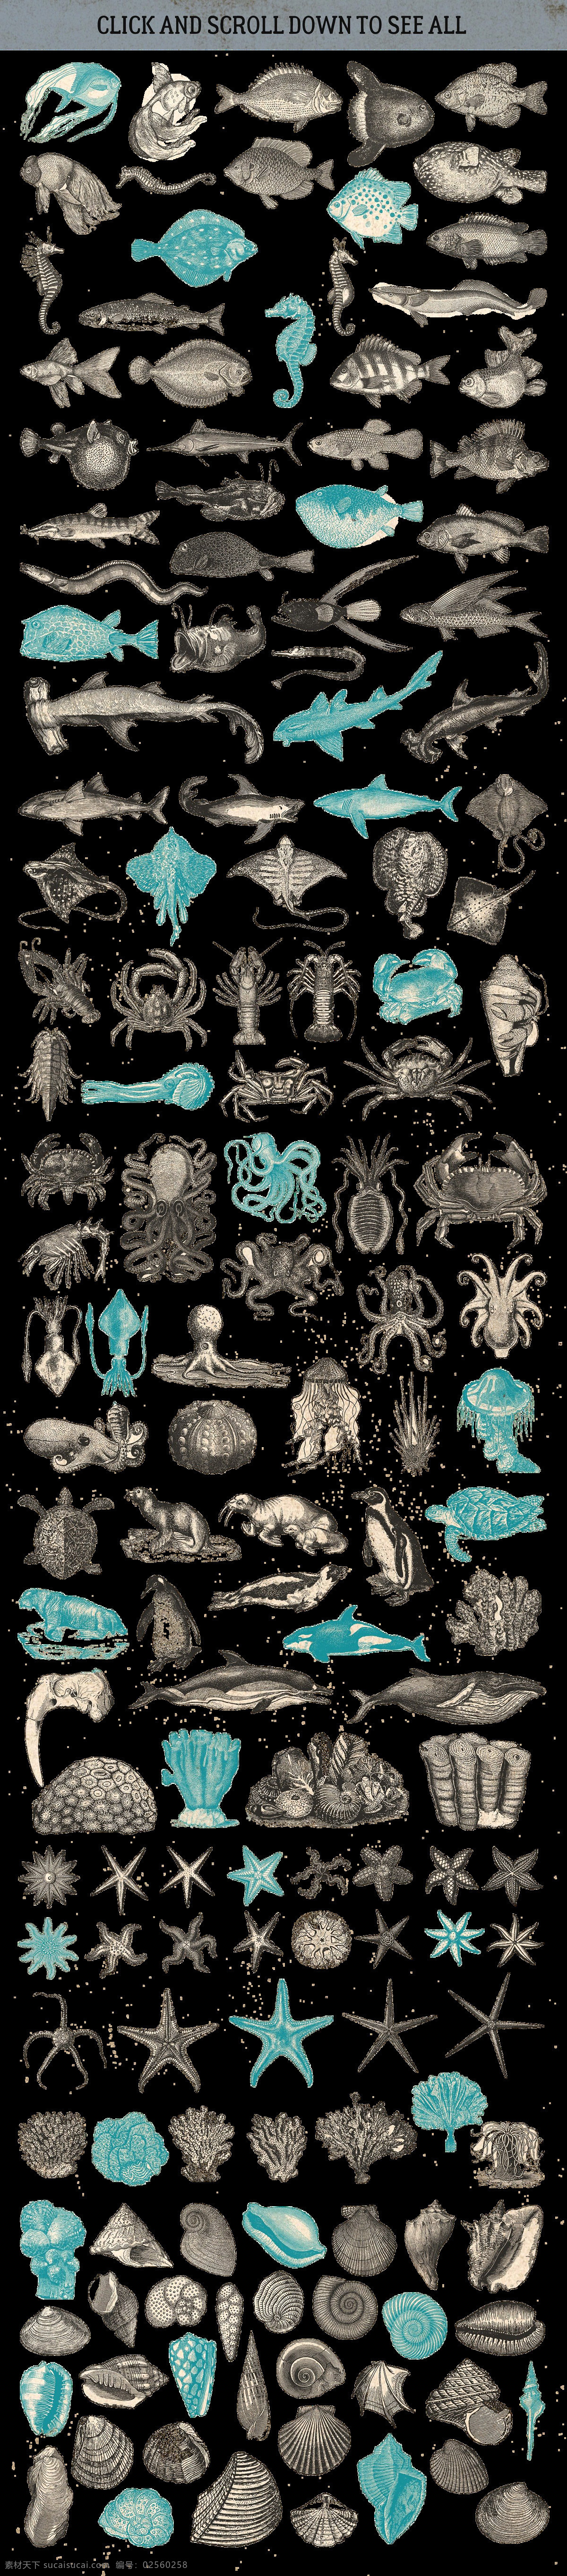 素描 绘制 海洋 各类 生物 动物 海马 海星 海洋生物 海洋素材 龙虾 螃蟹 贝壳